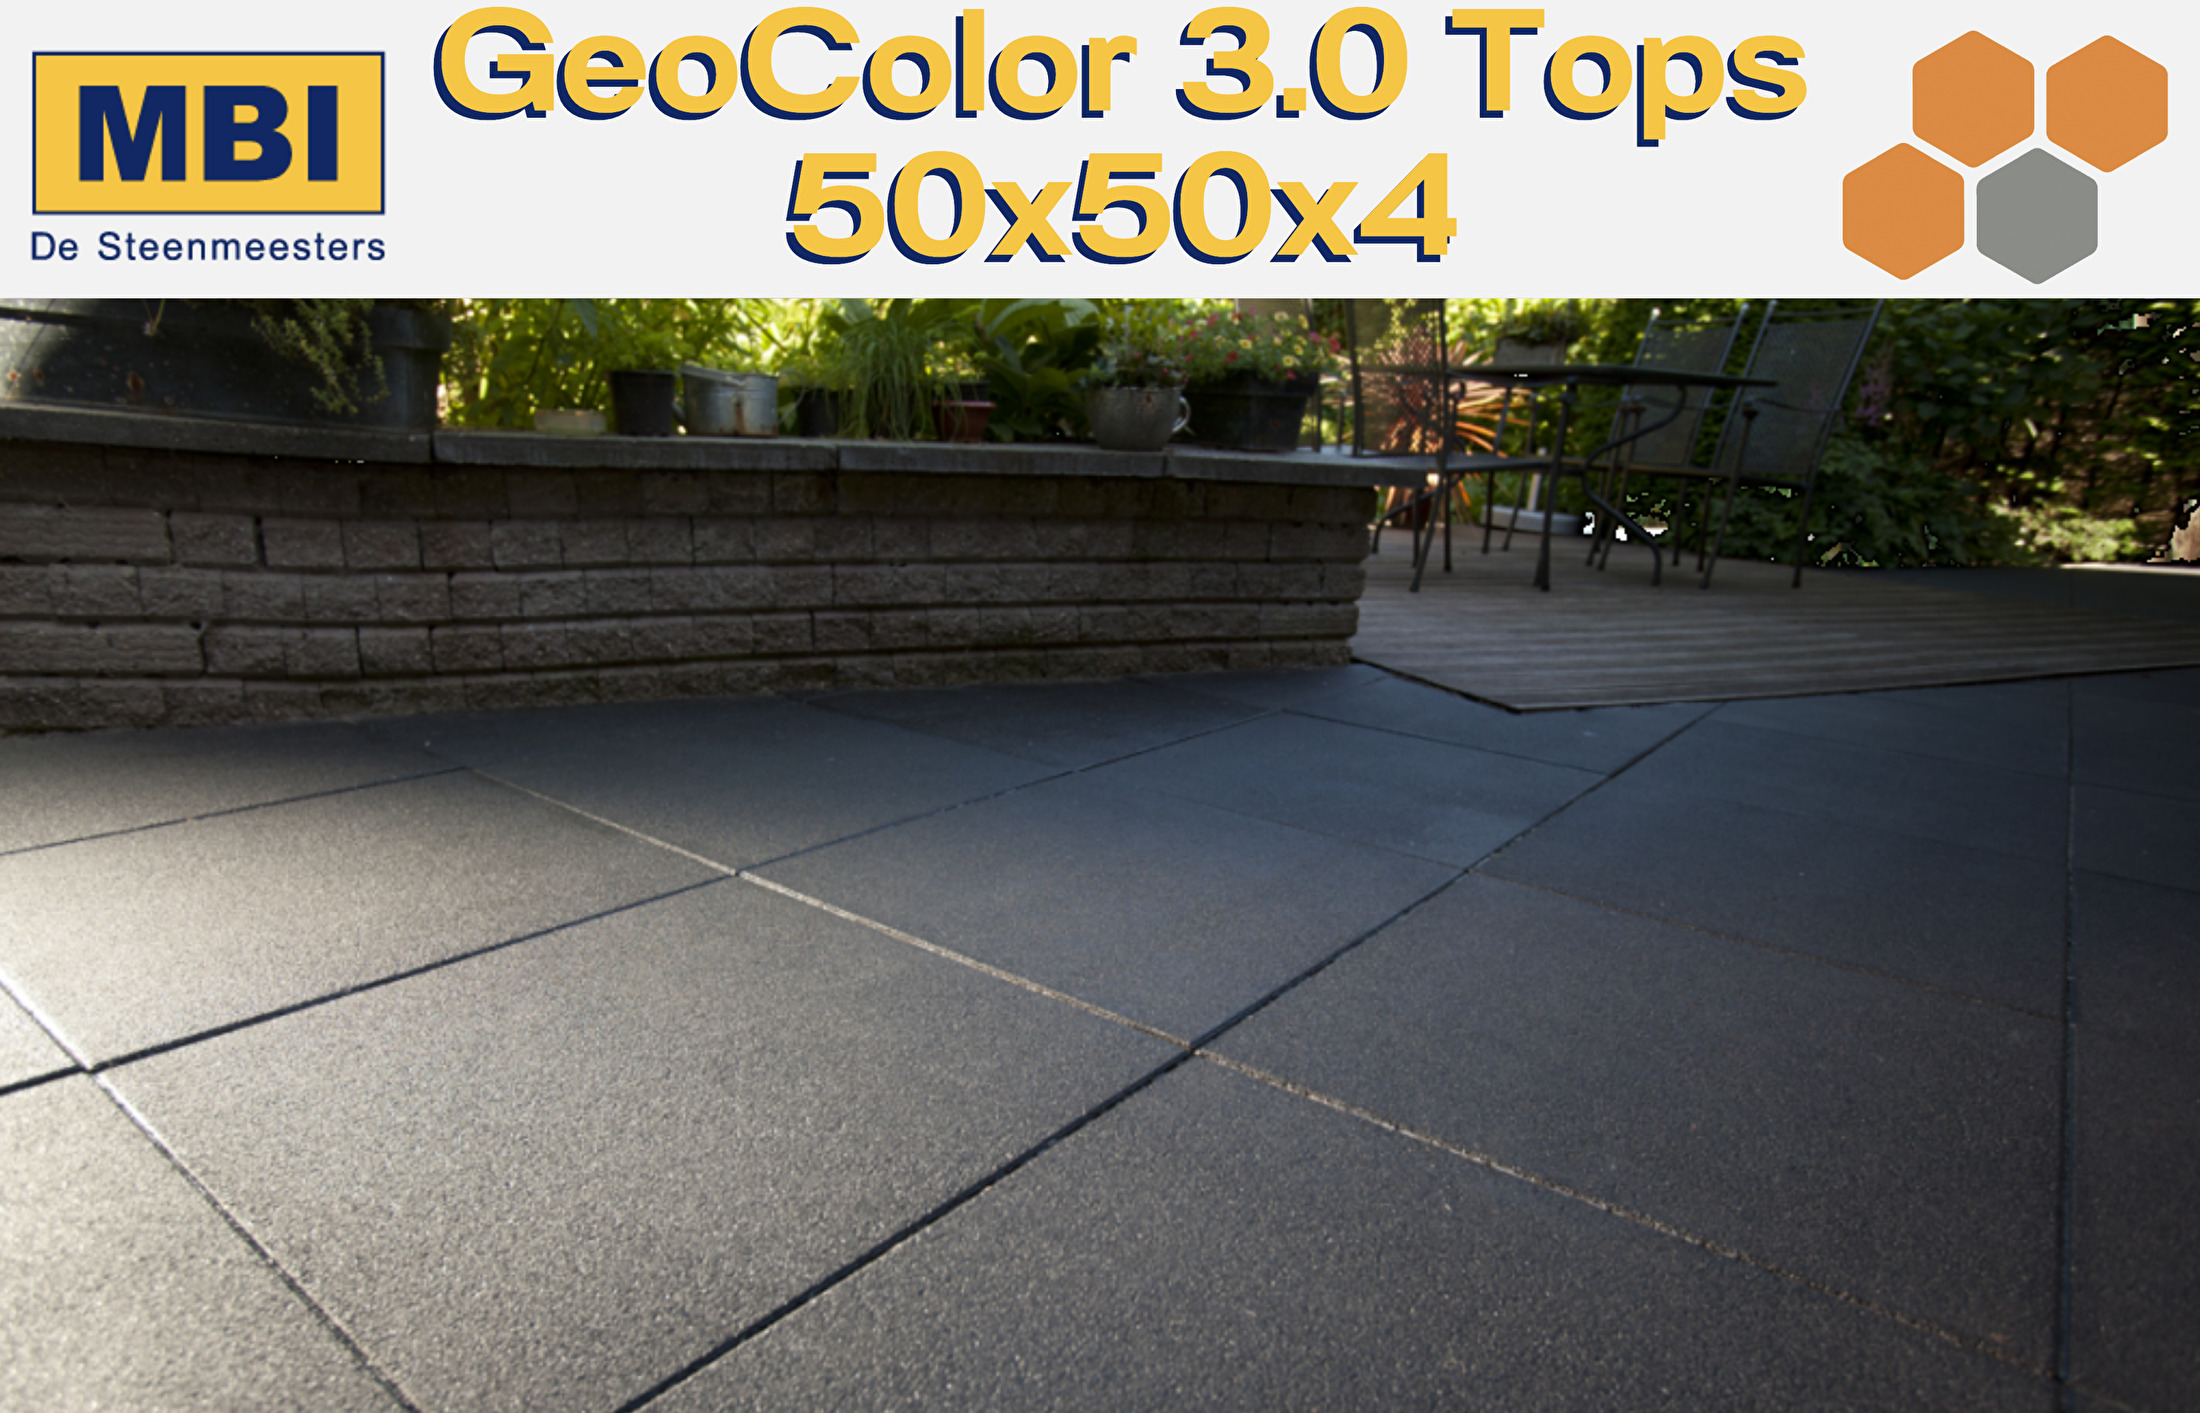 GeoColor 3.0 Tops 50x50x4